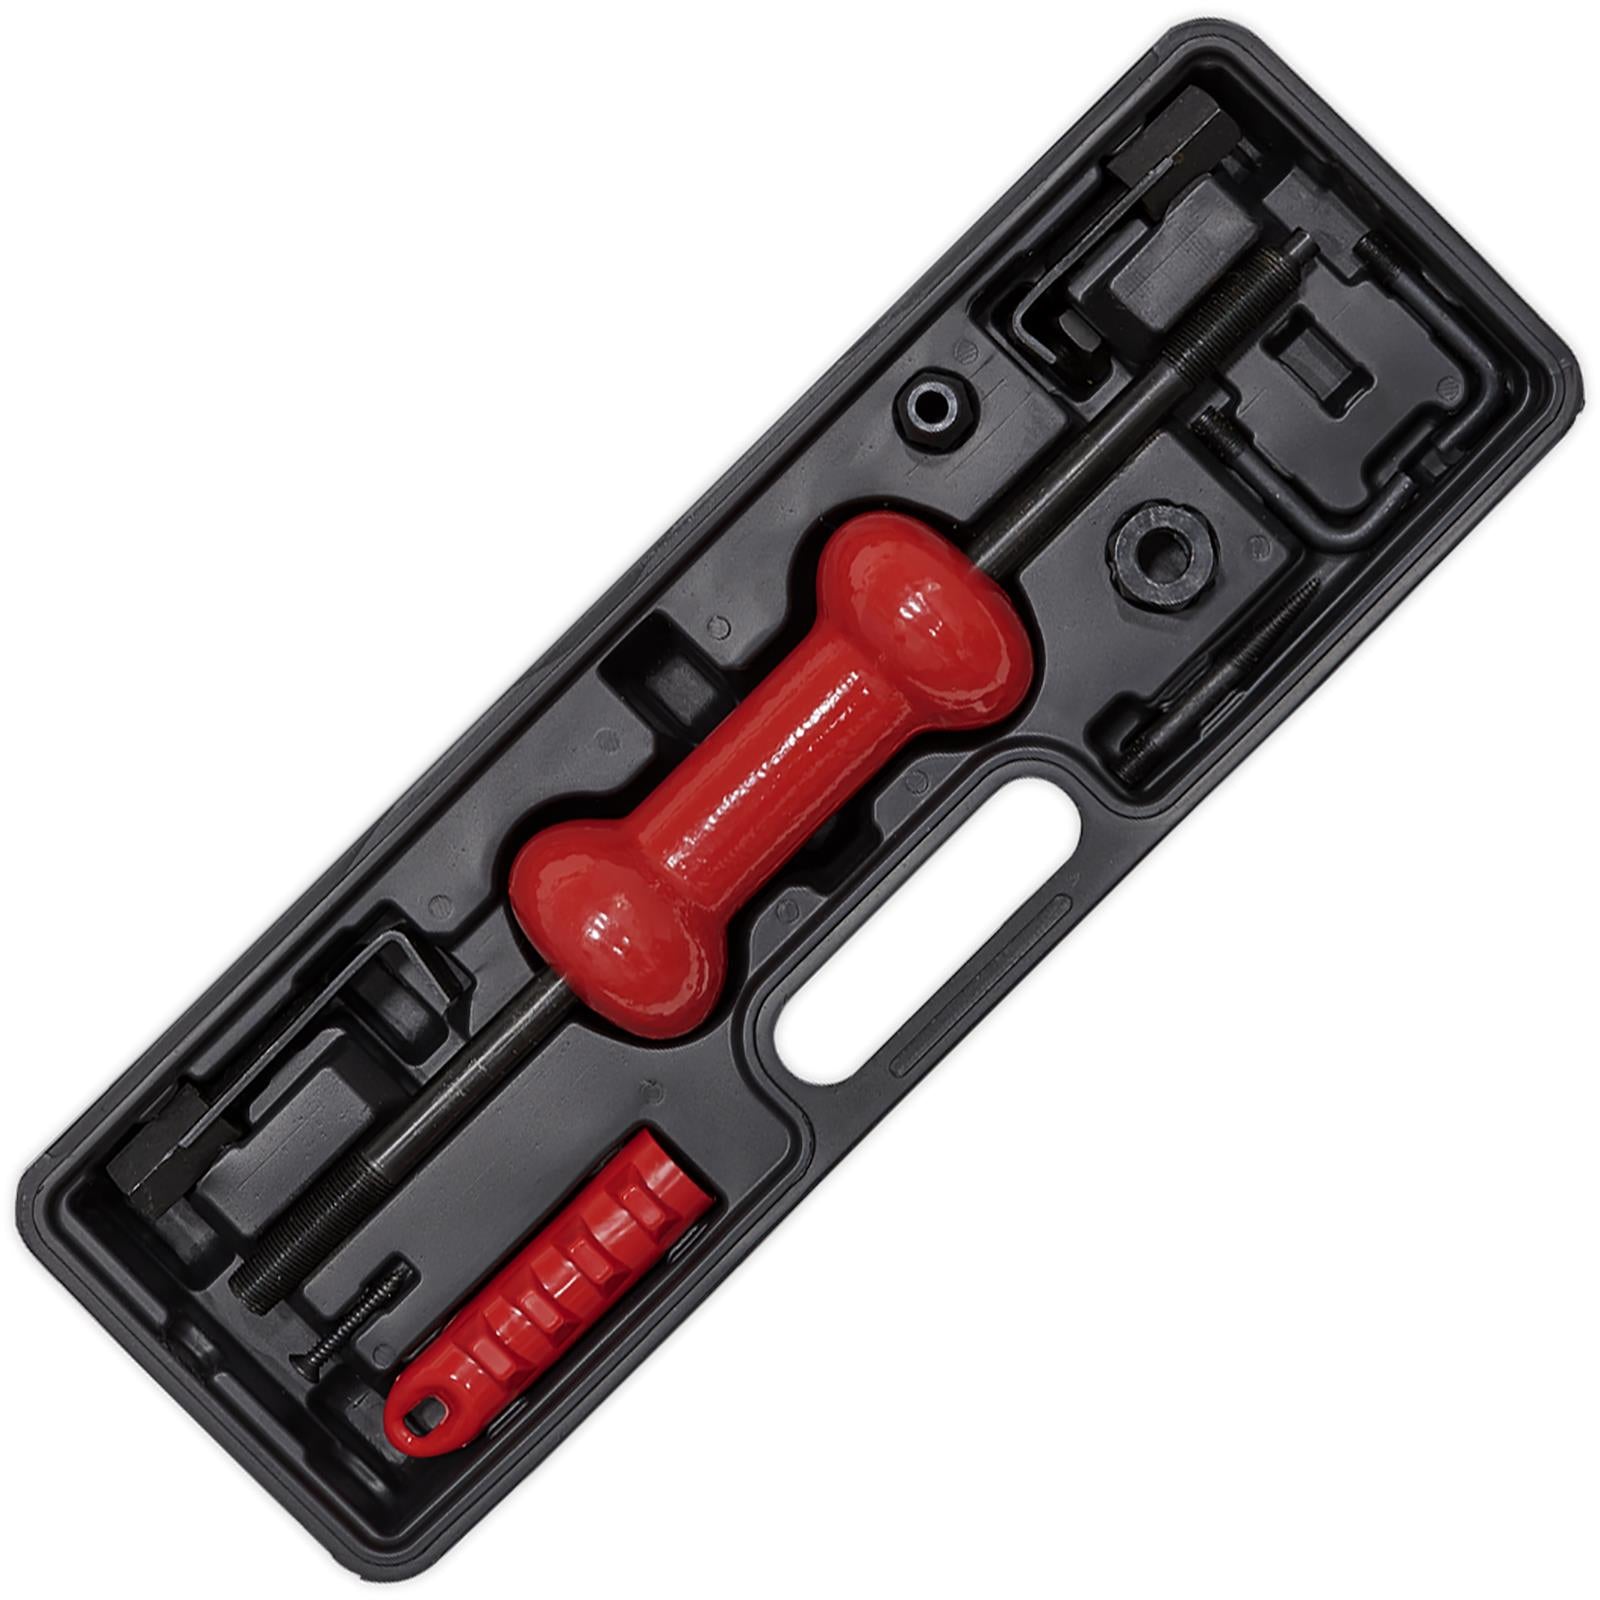 Sealey Slide Hammer Kit Carry Case Hooks Adaptor Screws Dent Panel Puller 9pc